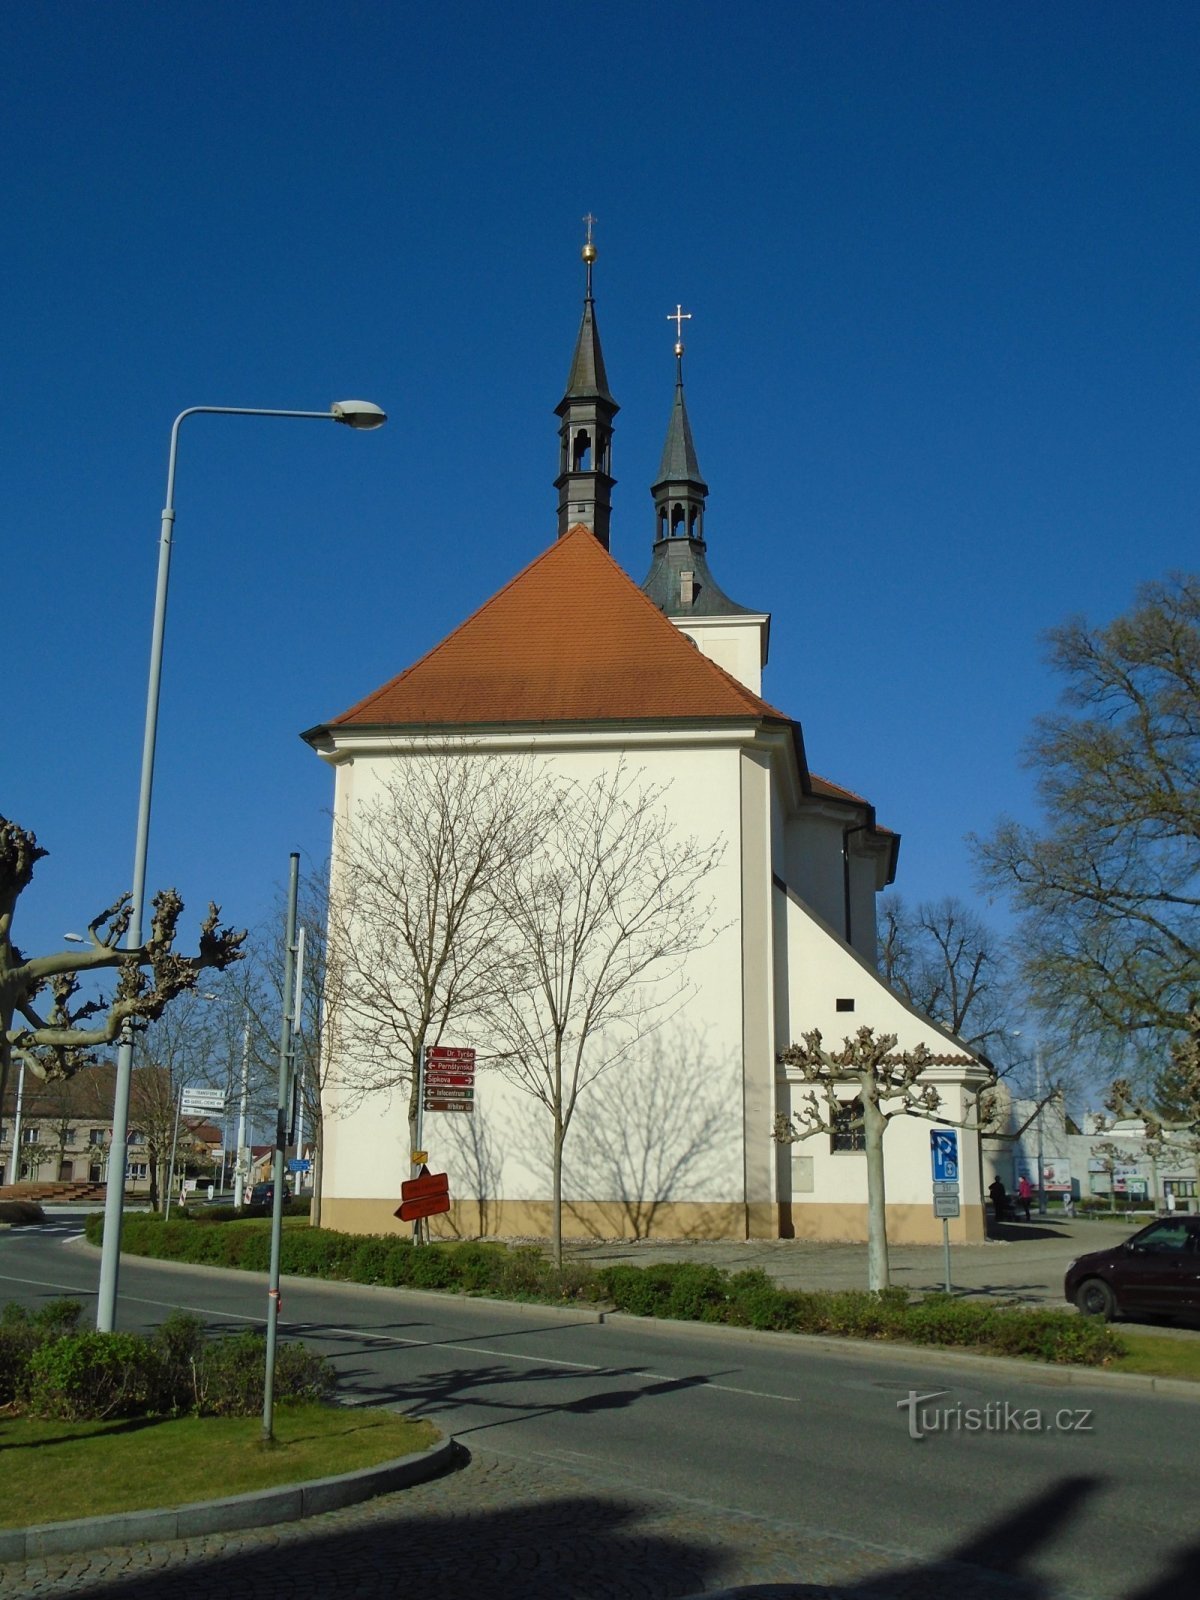 Церковь св. Мария Магдалина (Лазне Богданеч, 21.4.2019 апреля XNUMX г.)